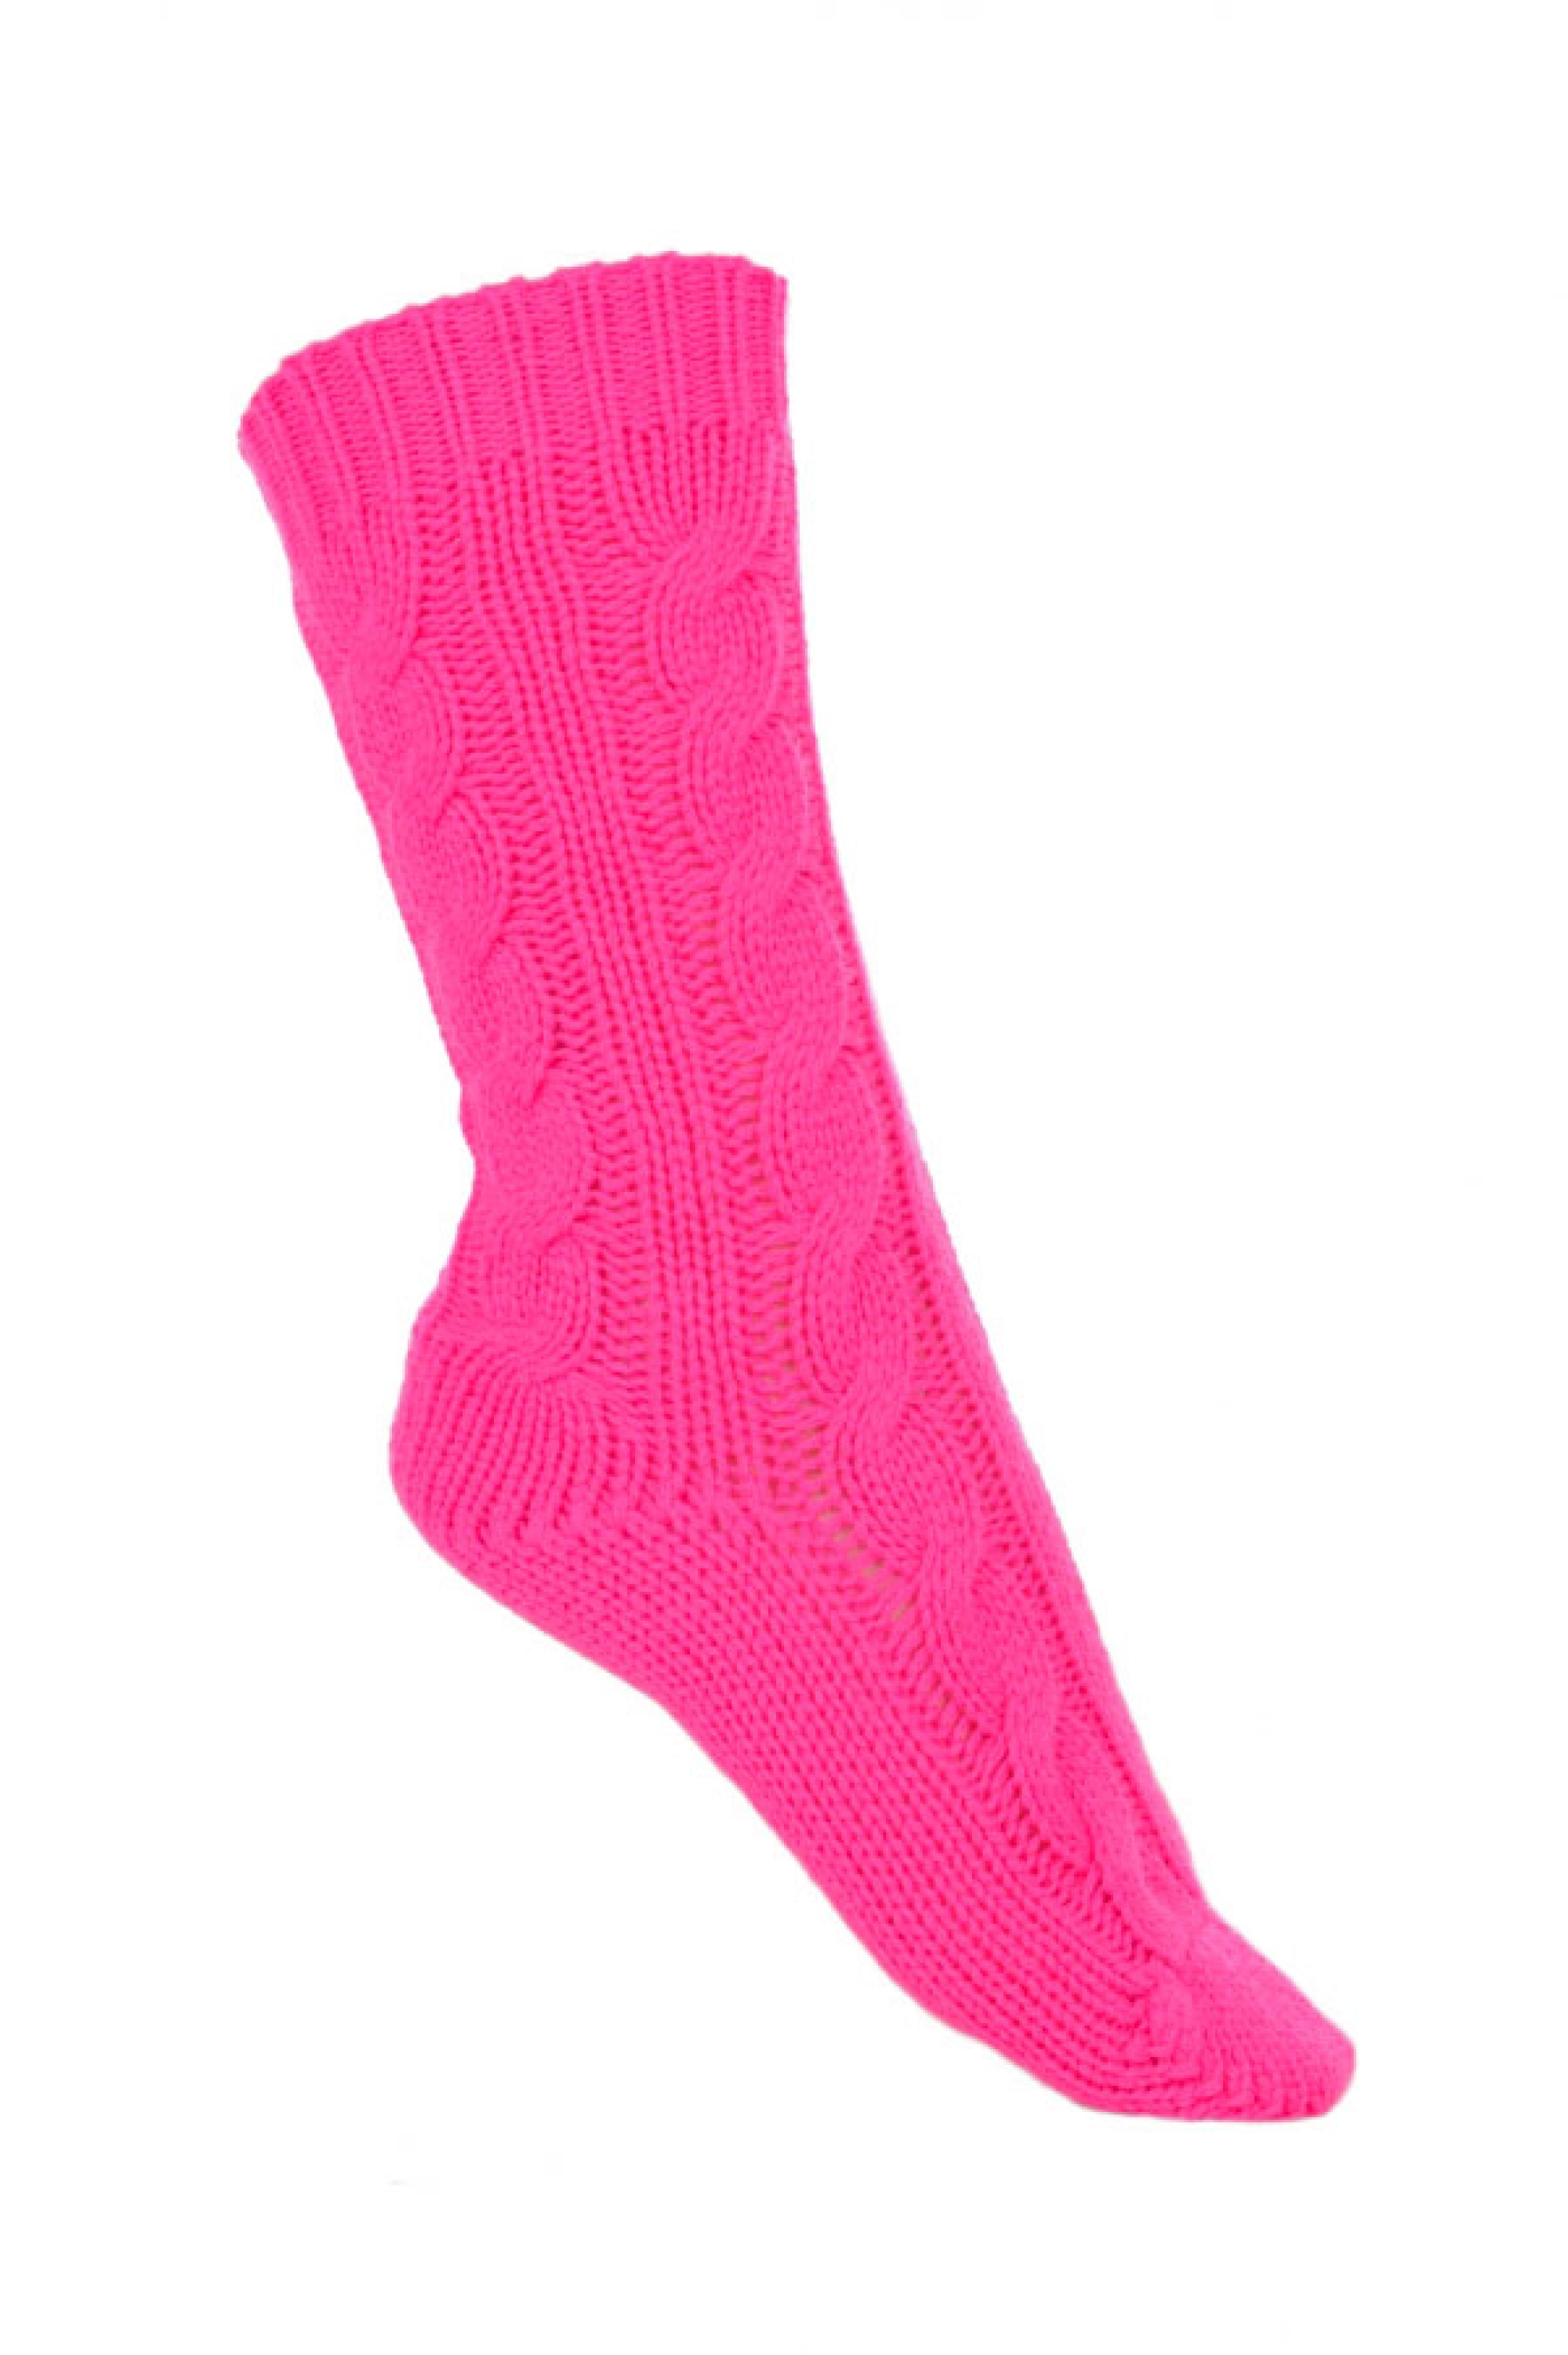 Cashmere accessories socks pedibus dayglo 37 41